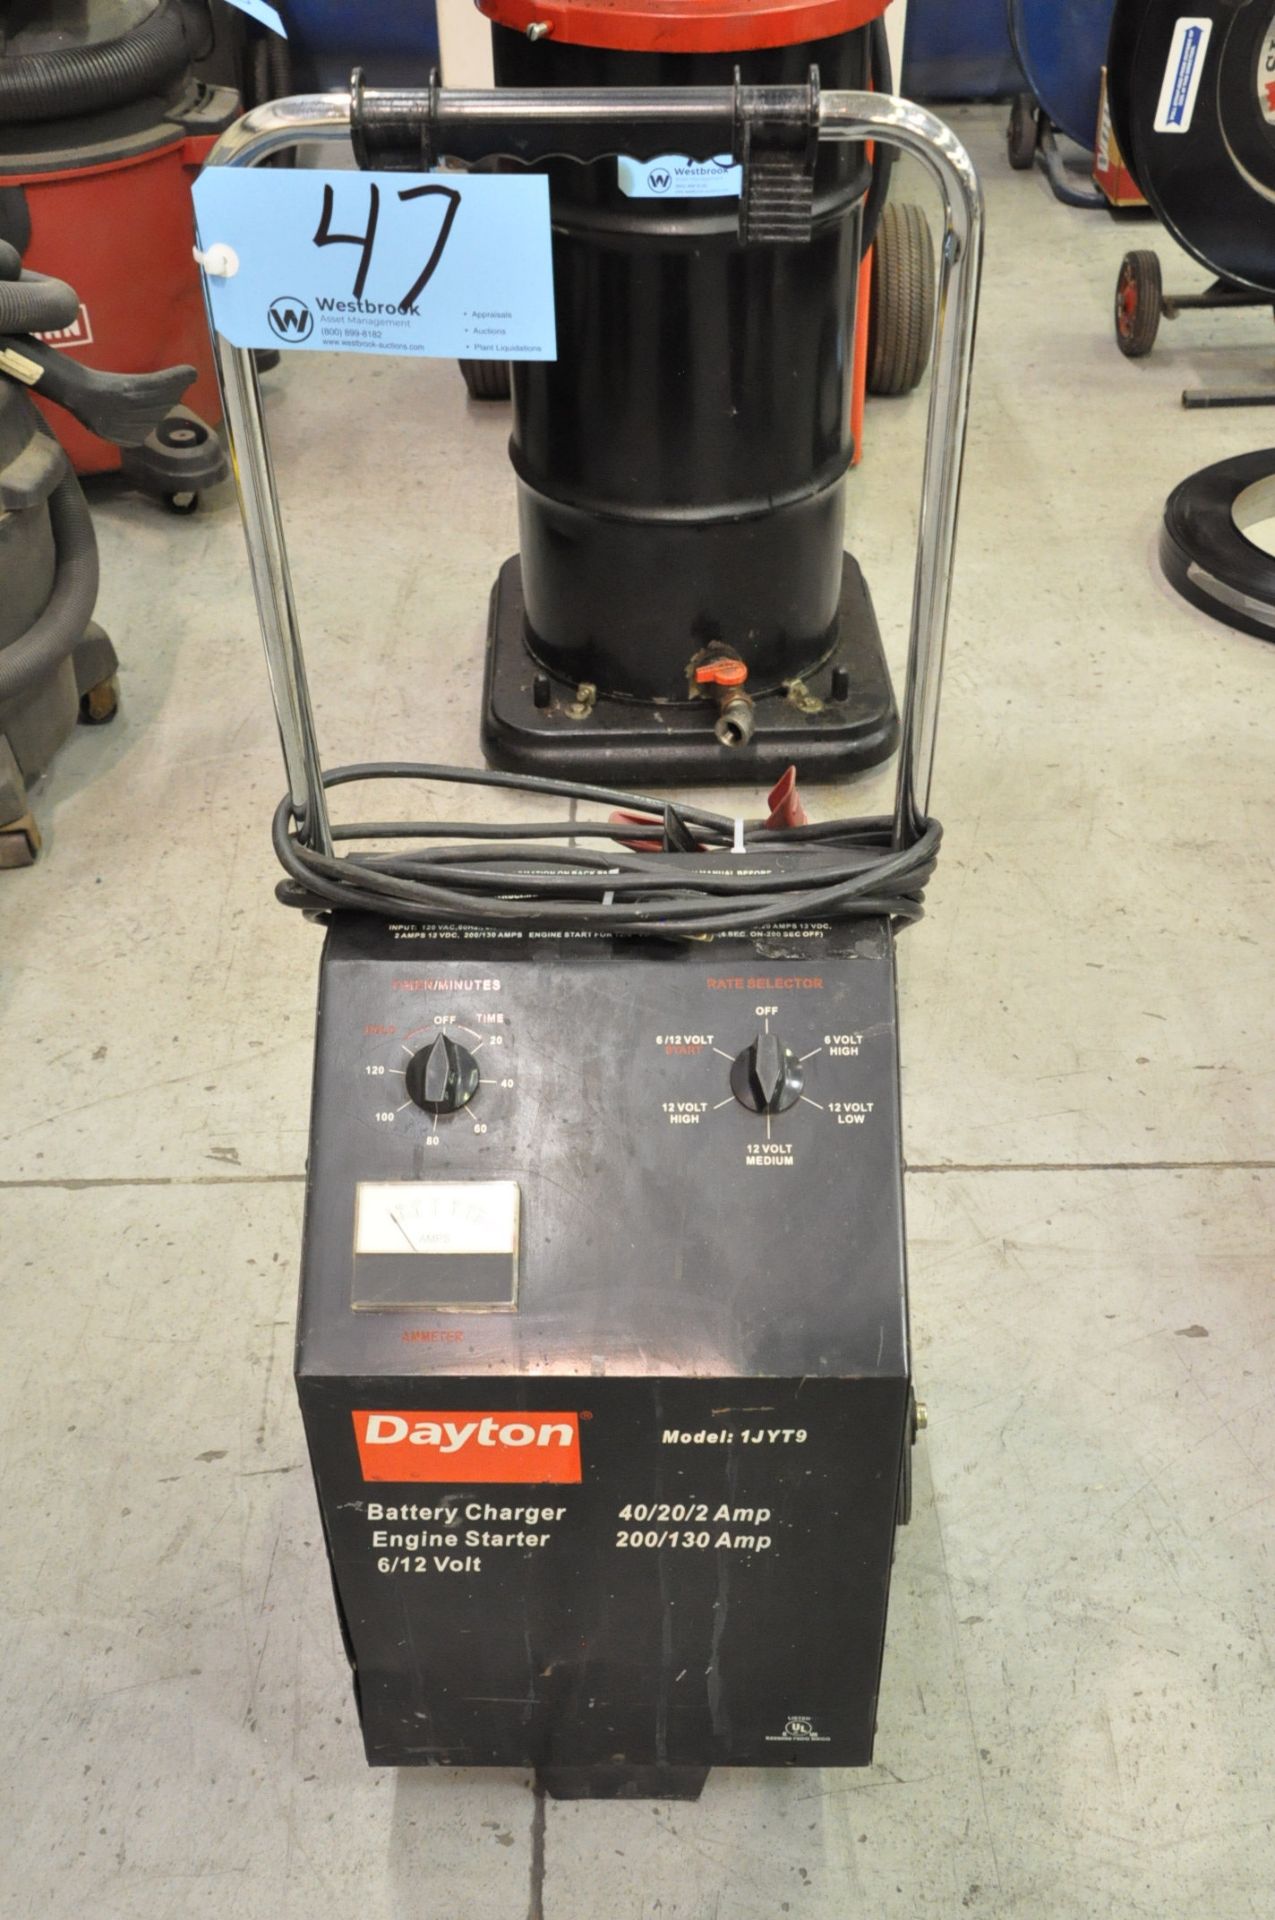 Dayton Model 1JYT9, 6/12 Volt, 40/20/2 Battery Charger, 200/130 Amp Engine Starter